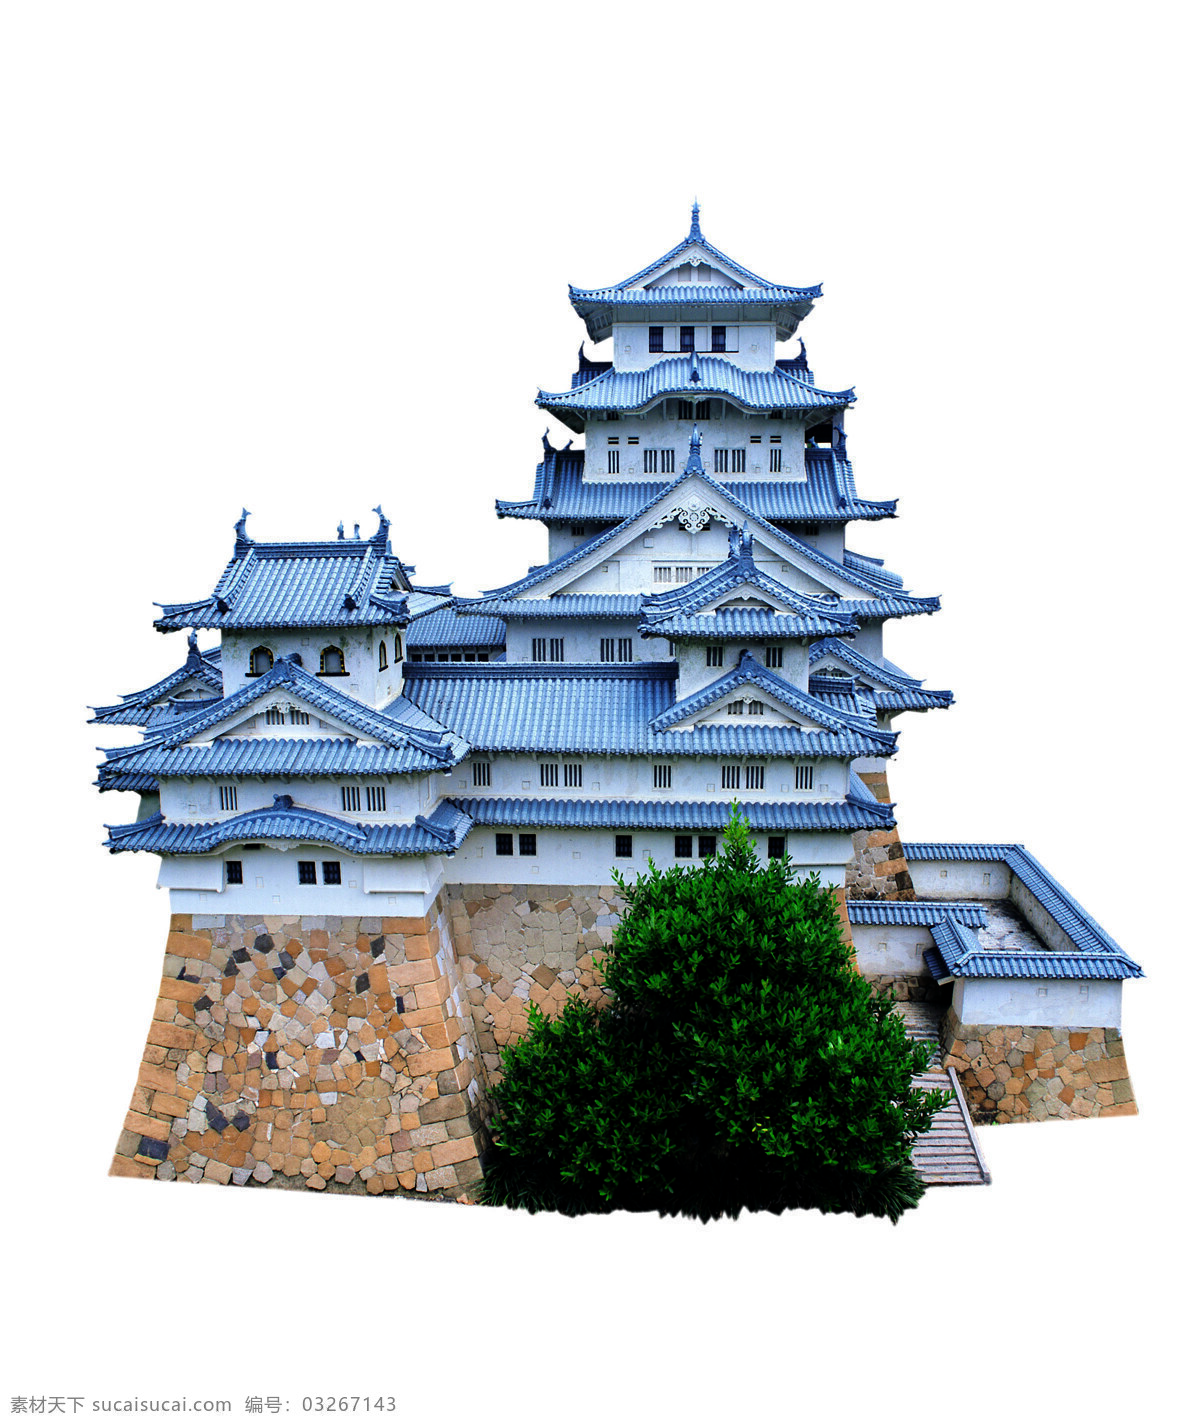 姬路城 日本建筑 古建筑 历史文化遗产 名胜古迹 世界著名建筑 自然景观 自然风光 设计图库